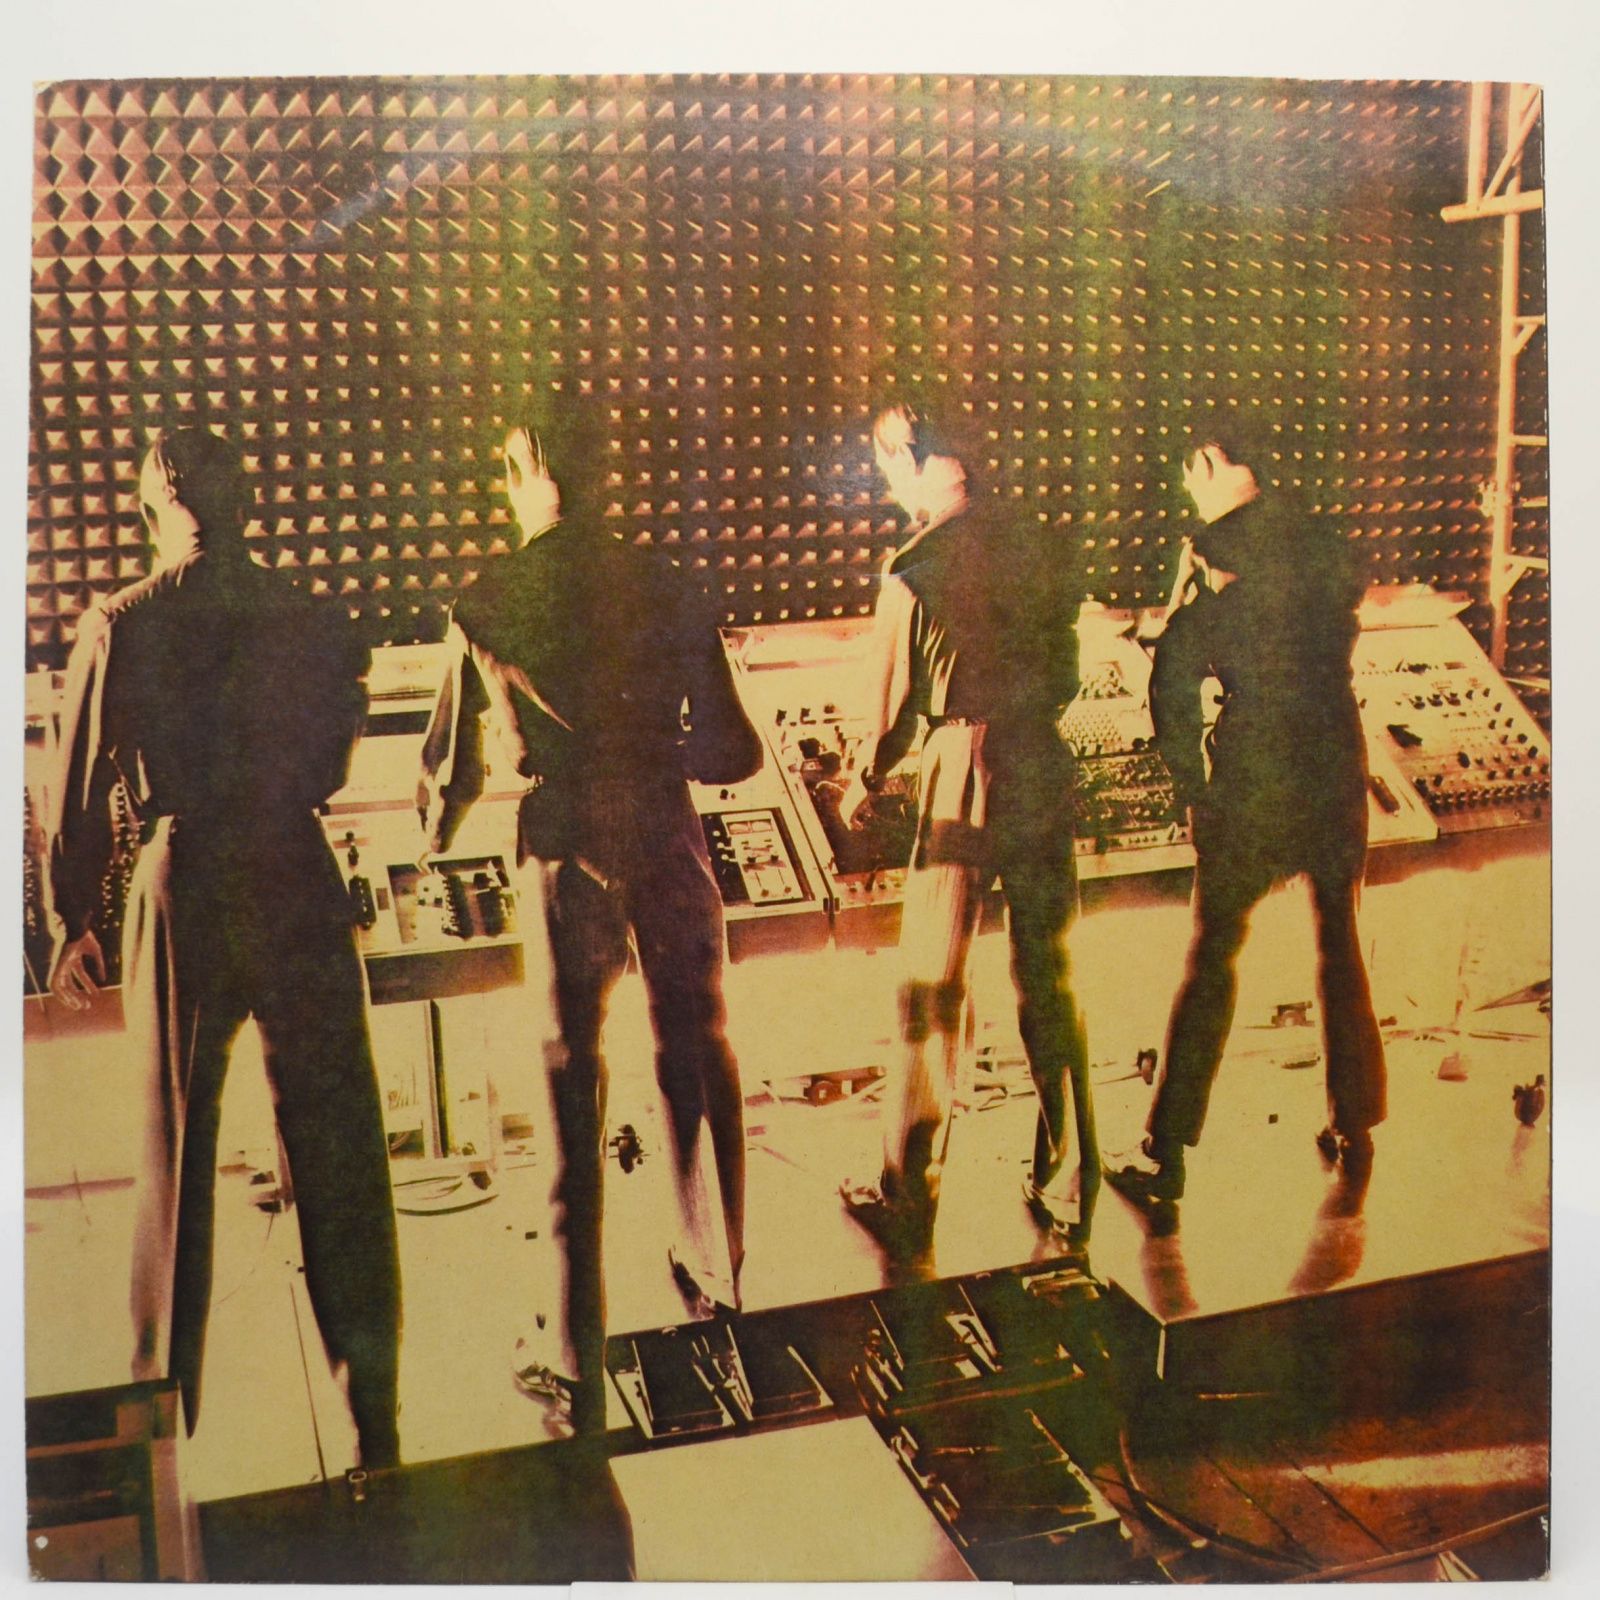 Kraftwerk — Computerwelt, 1981